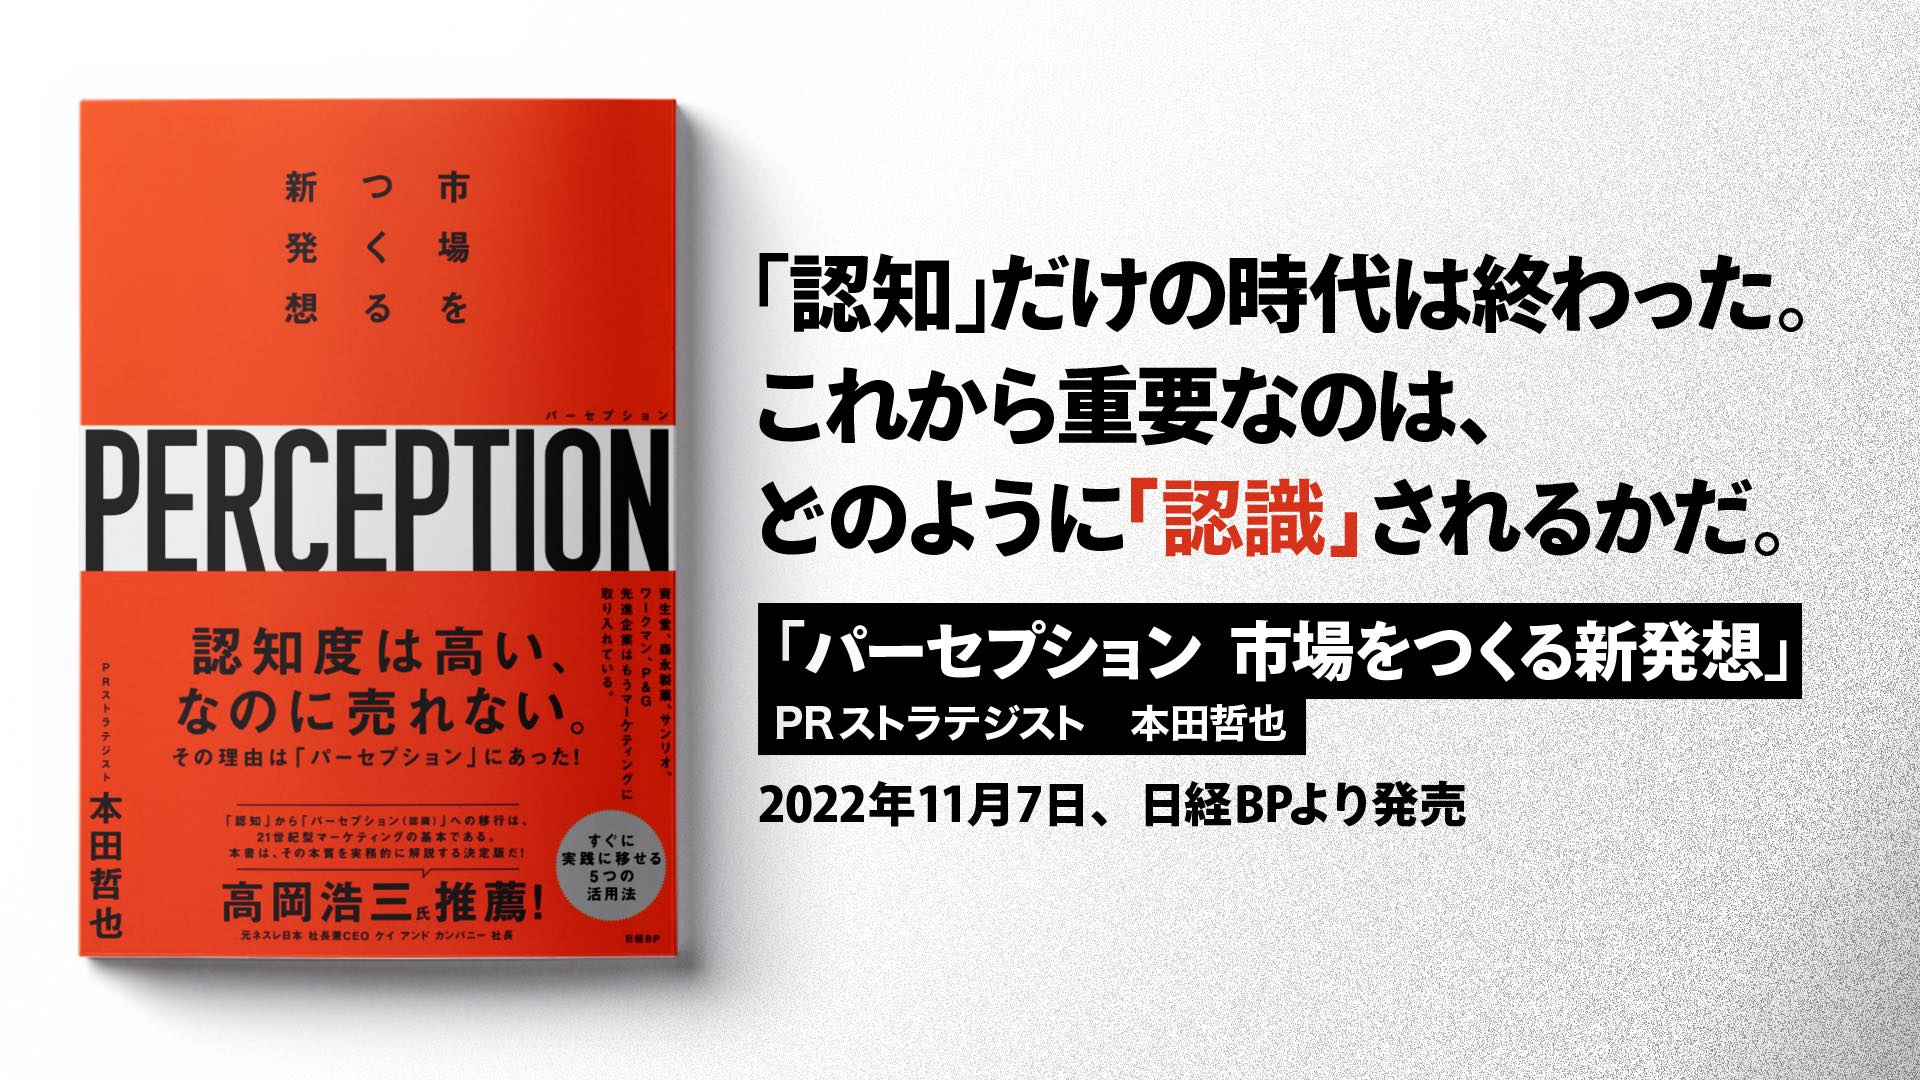 書籍「パーセプション 市場をつくる新発想」が2022年11月7日発売決定